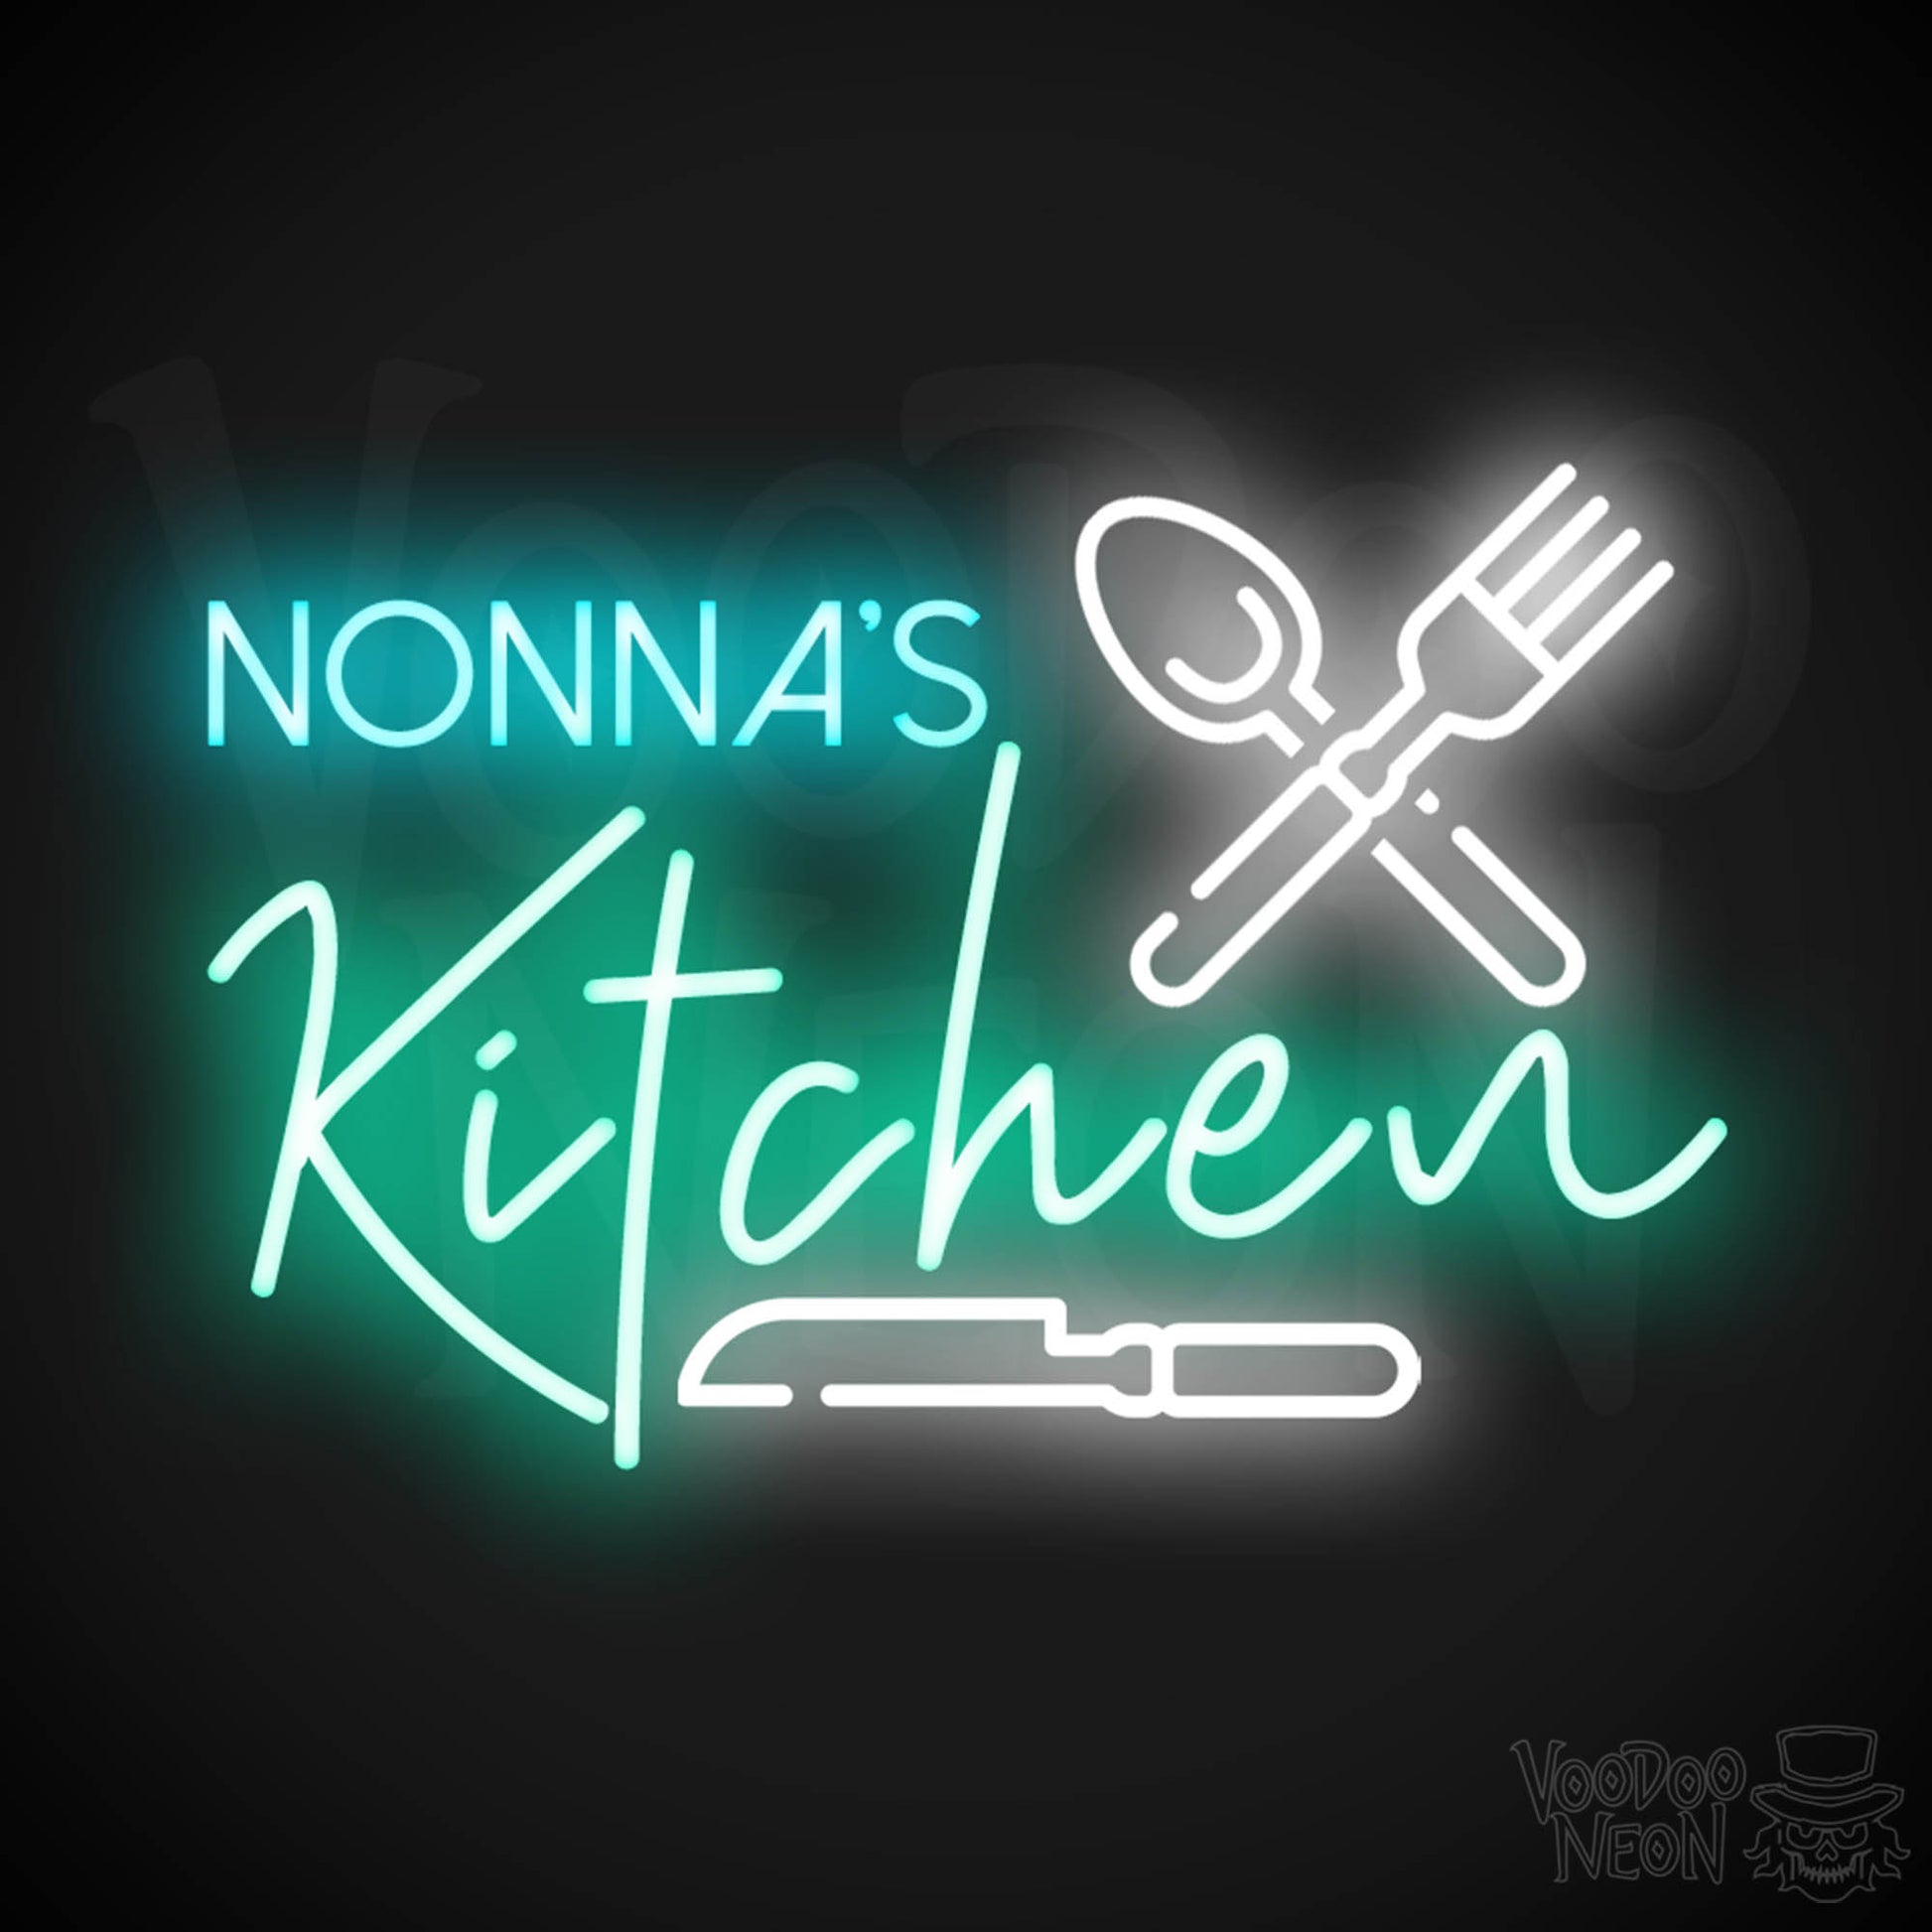 Nonna's Kitchen Neon Sign - Neon Nona's Kitchen Sign - Wall Art - Color Multi-Color